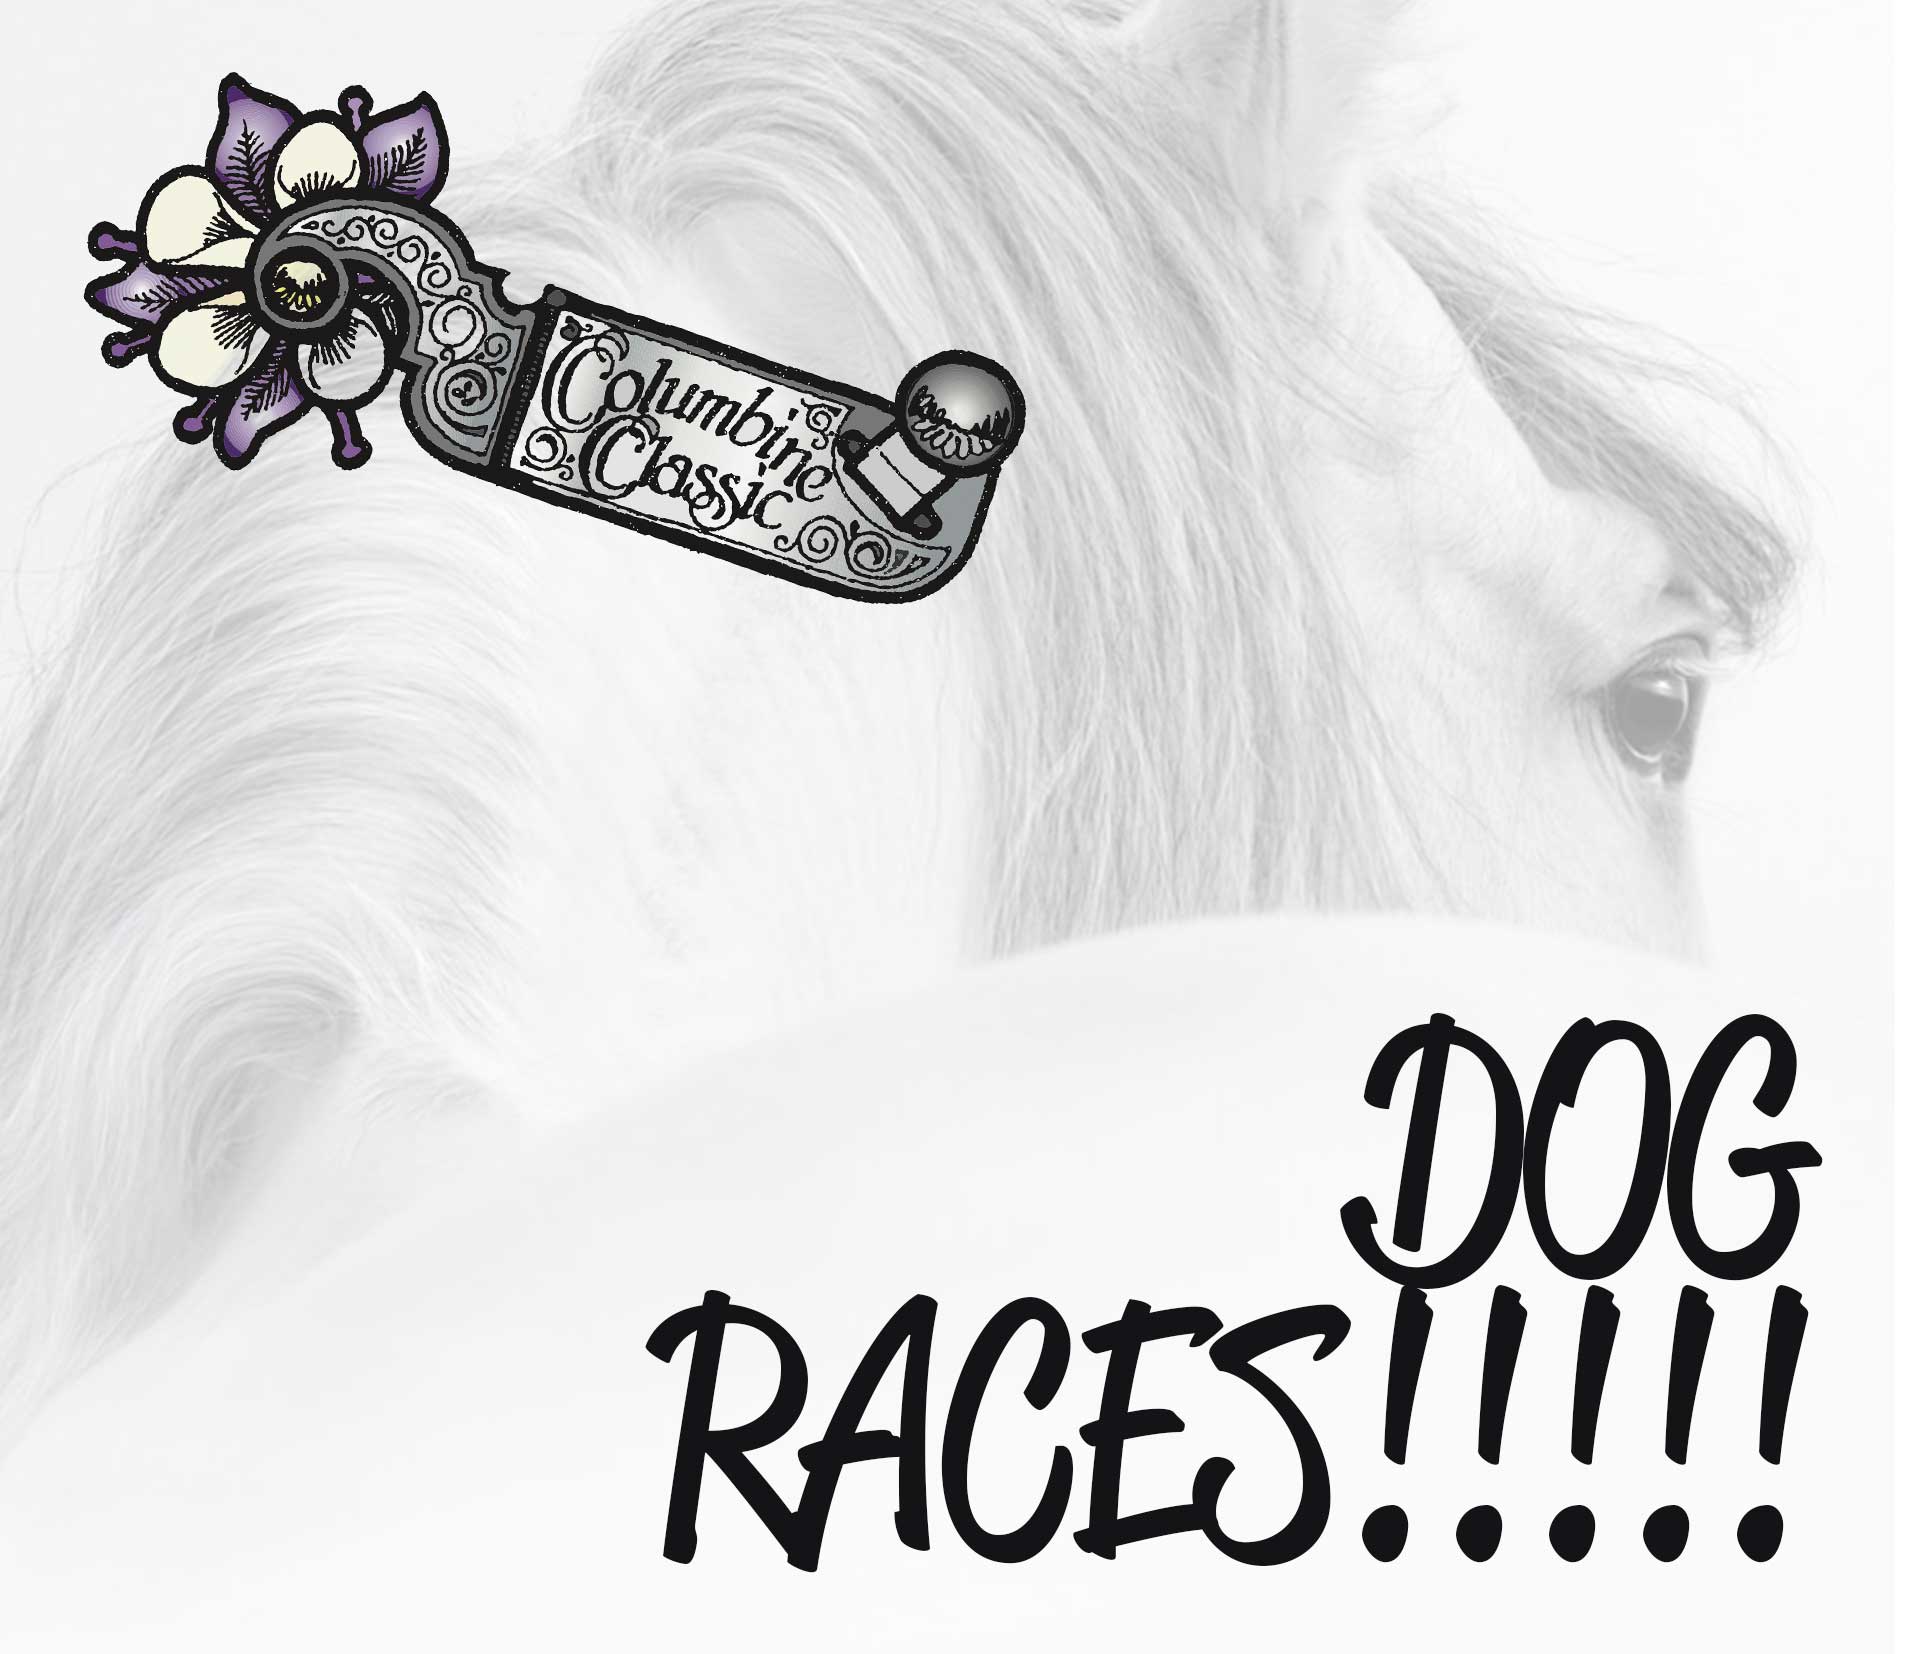 tcc-dog-races